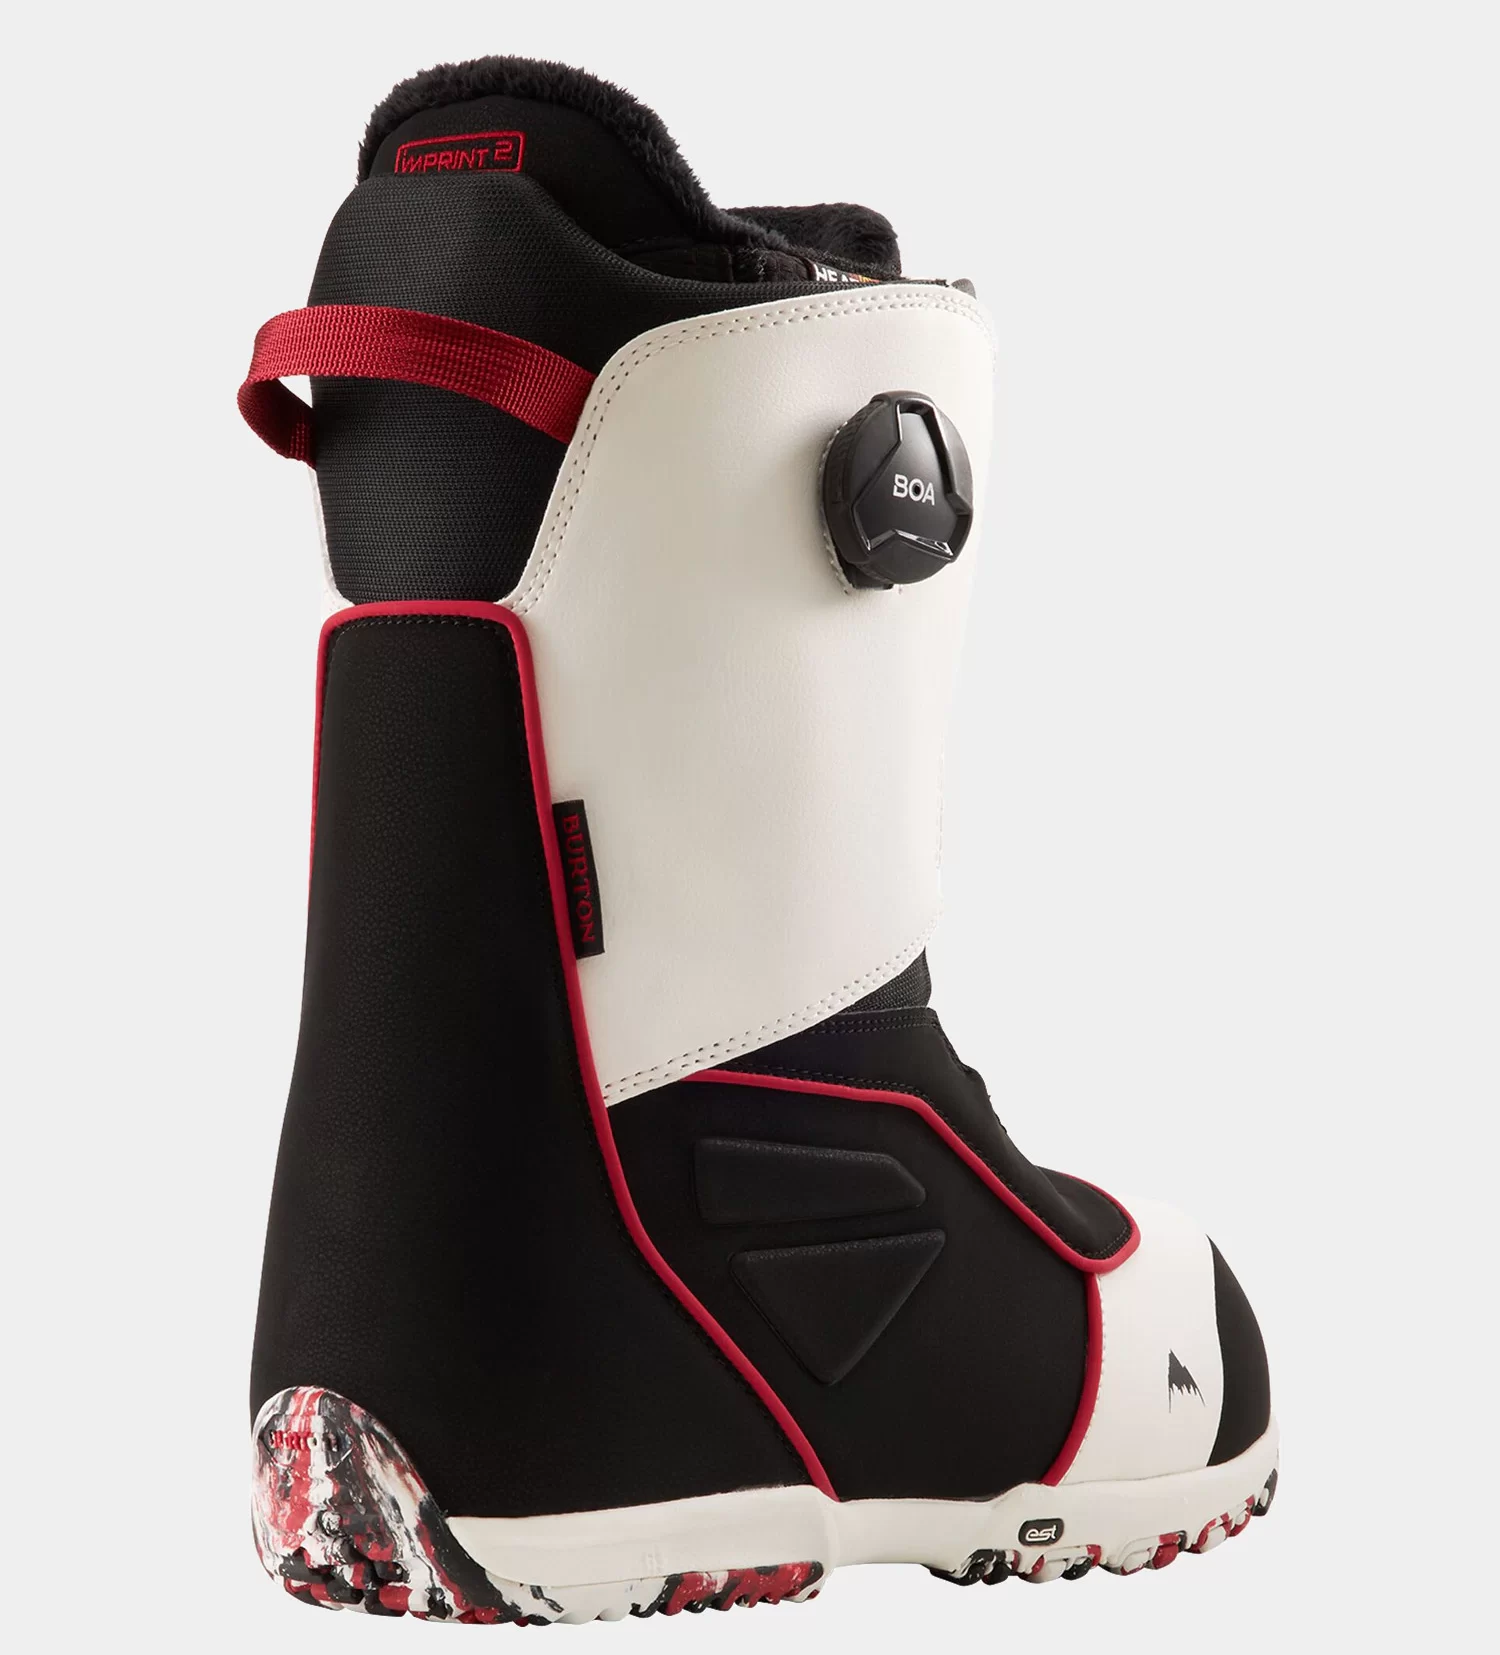 1257735-burton-ruler-boa-snowboard-cipk-white-black-red-w1920w